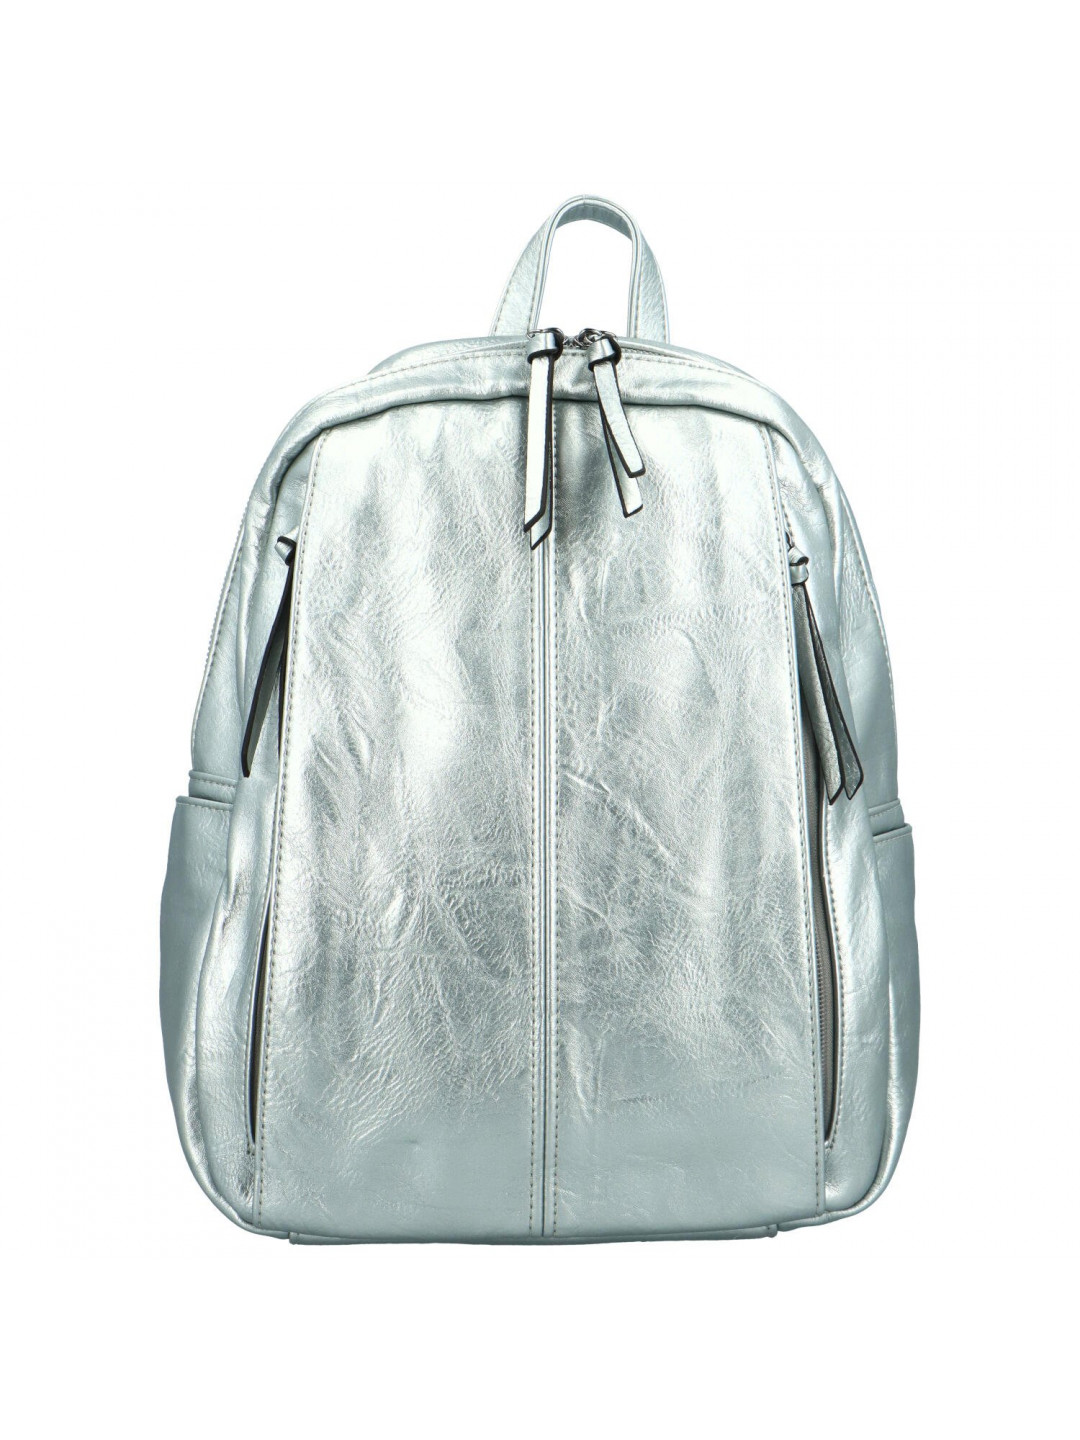 Stylový dámský koženkový kabelko batoh Cedra stříbrný